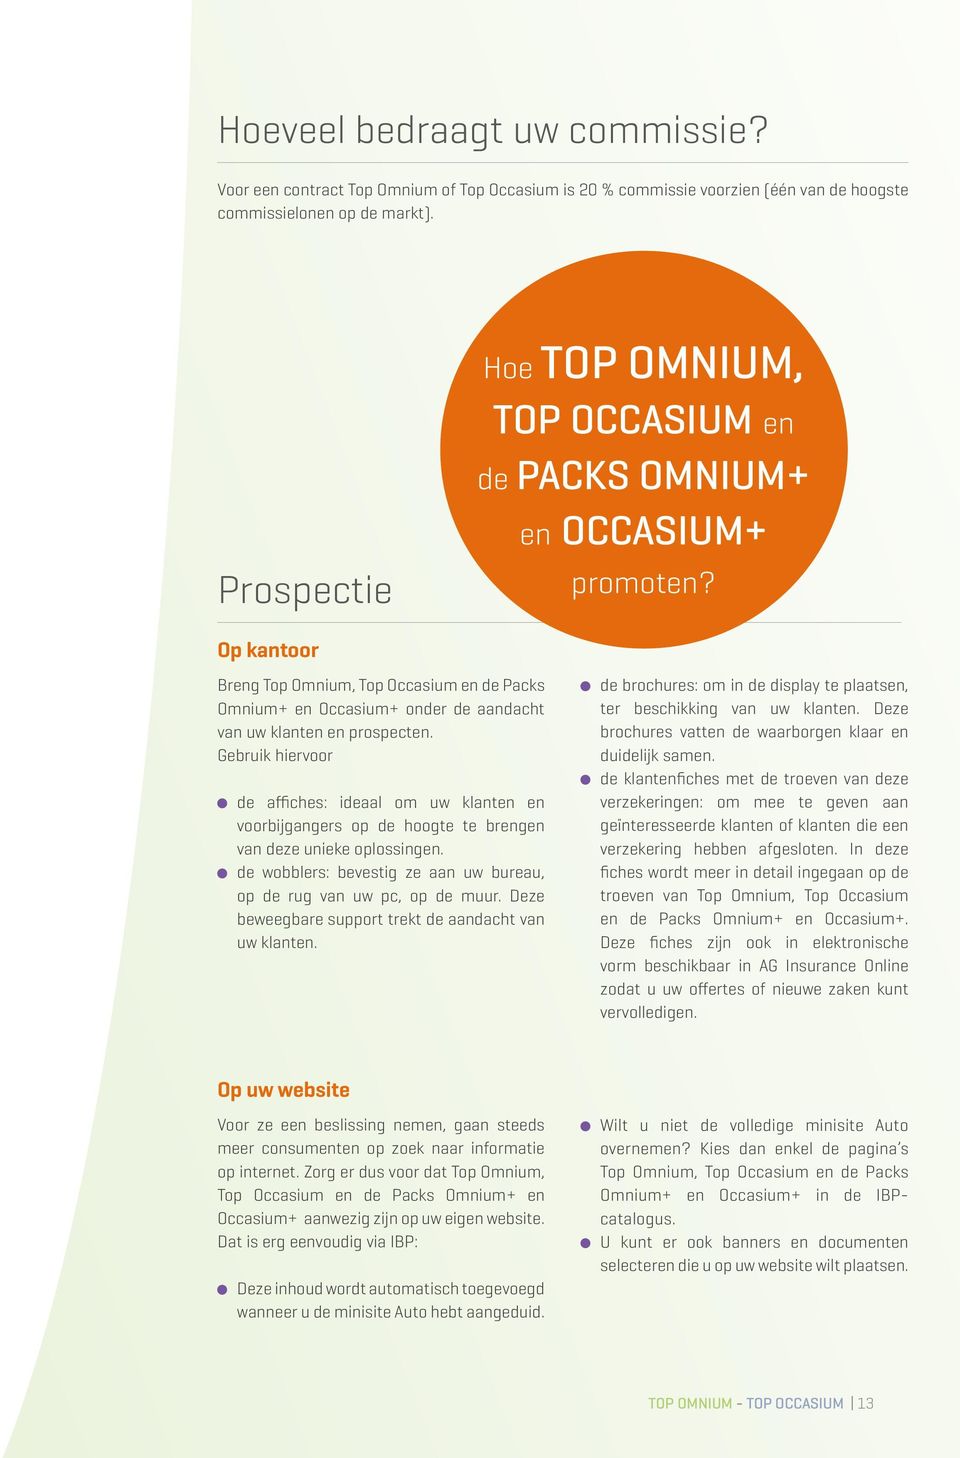 Op kantoor Breng Top Omnium, Top Occasium en de Packs Omnium+ en Occasium+ onder de aandacht van uw klanten en prospecten.